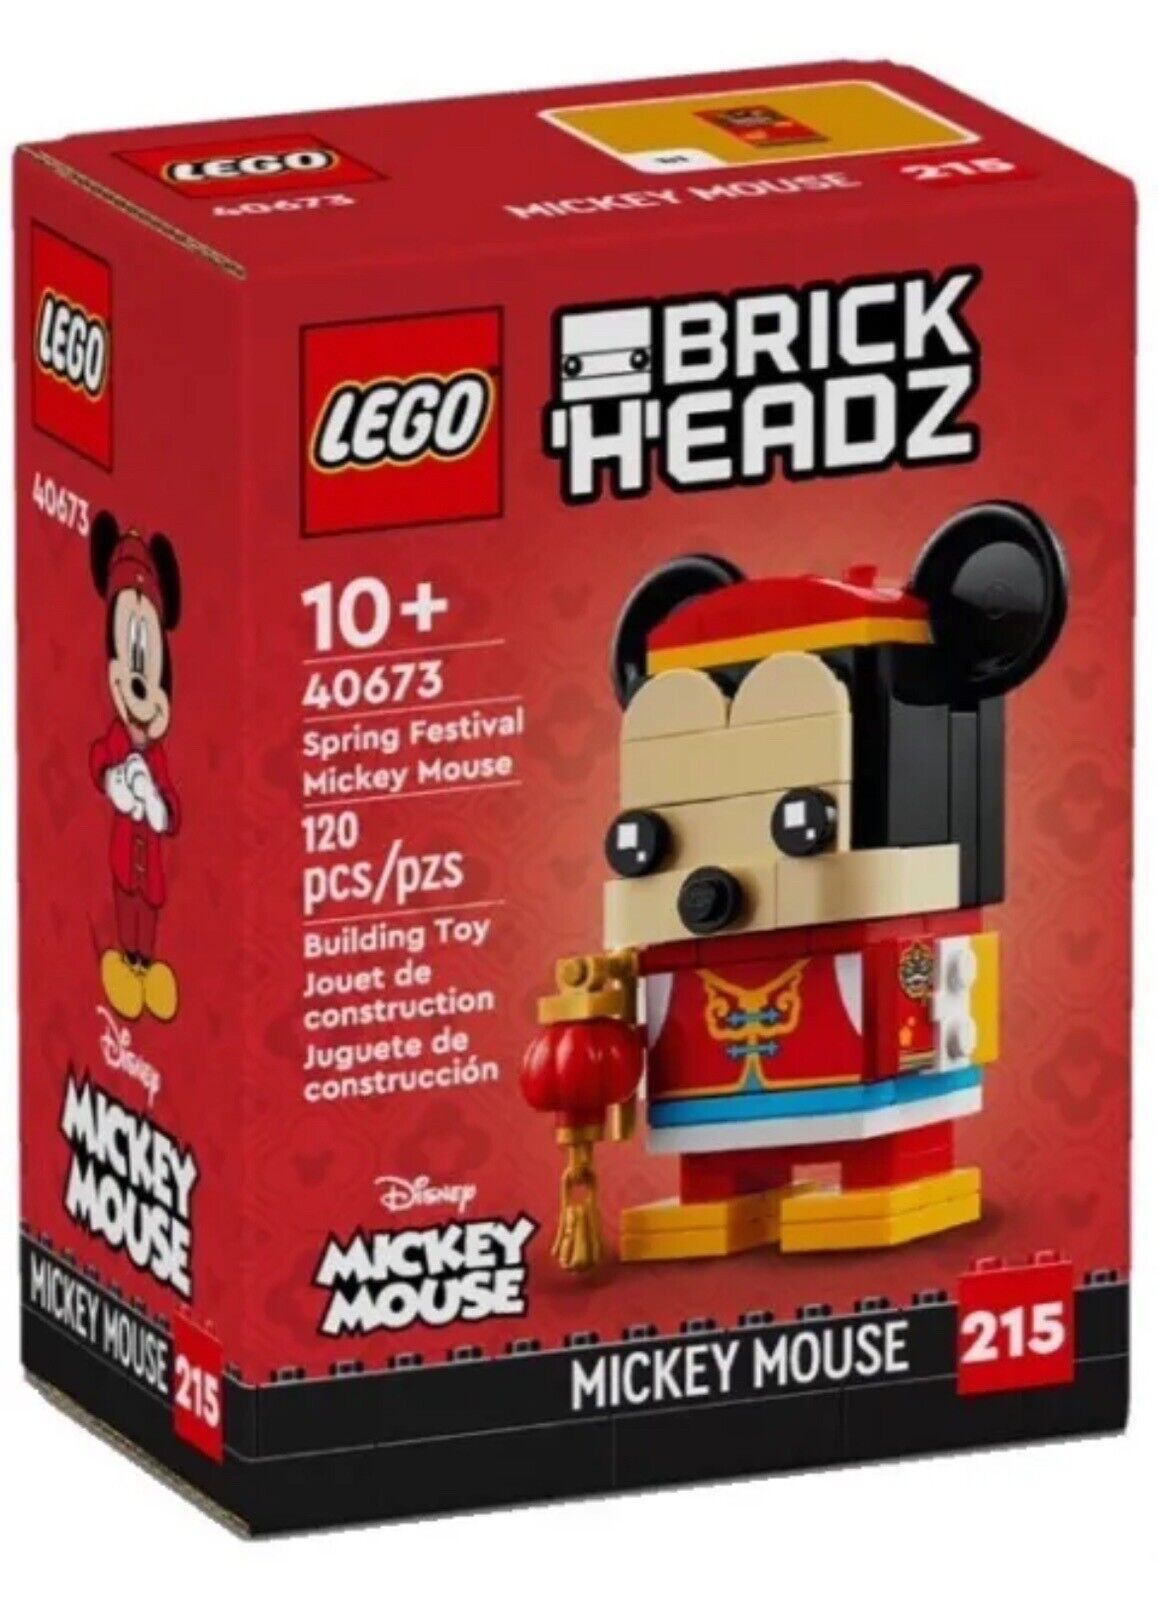 Конструктор LEGO BrickHeadz Весенний фестиваль Микки Мауса 40673, 120 дет.